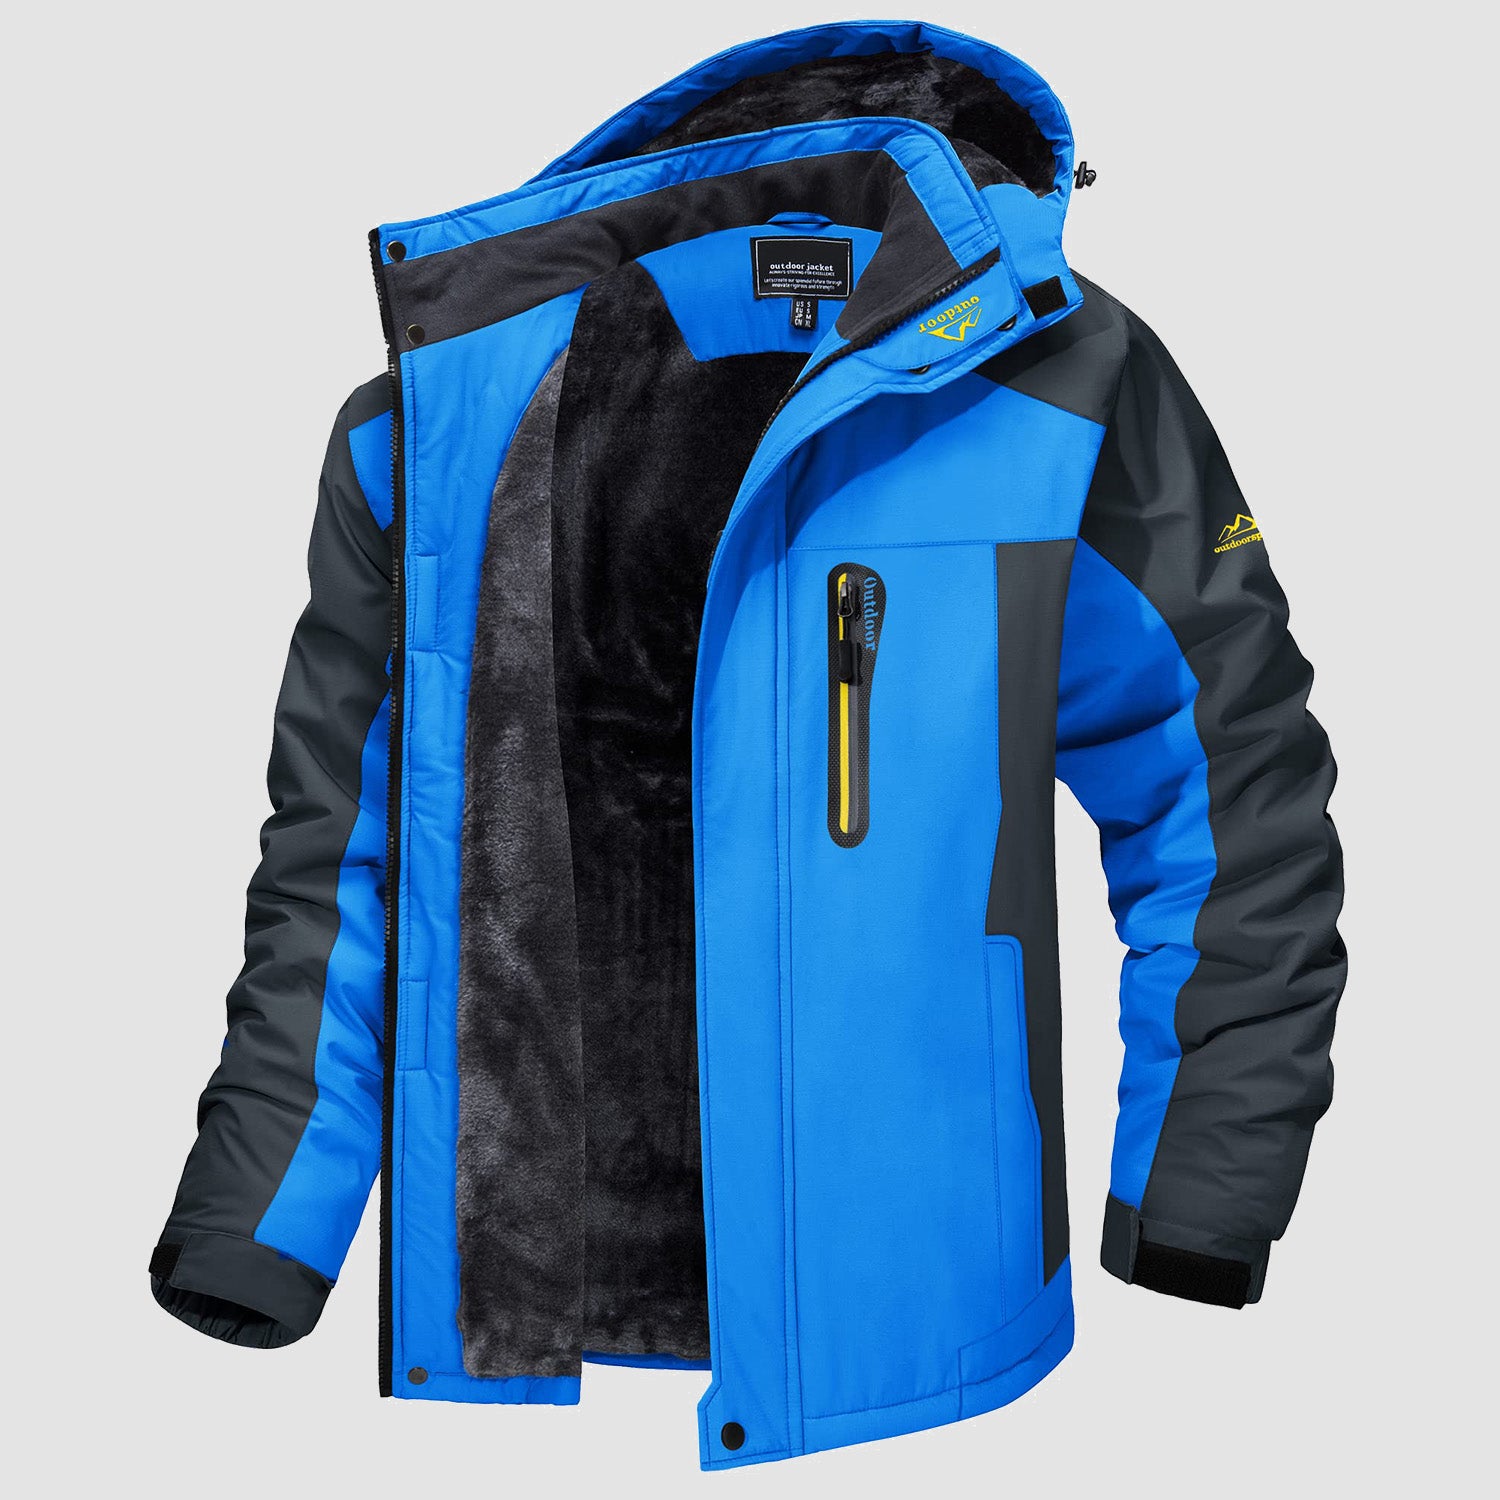 Men's Fleece Lined Parka Coats Water Resistant Snow Ski Winter Jacket